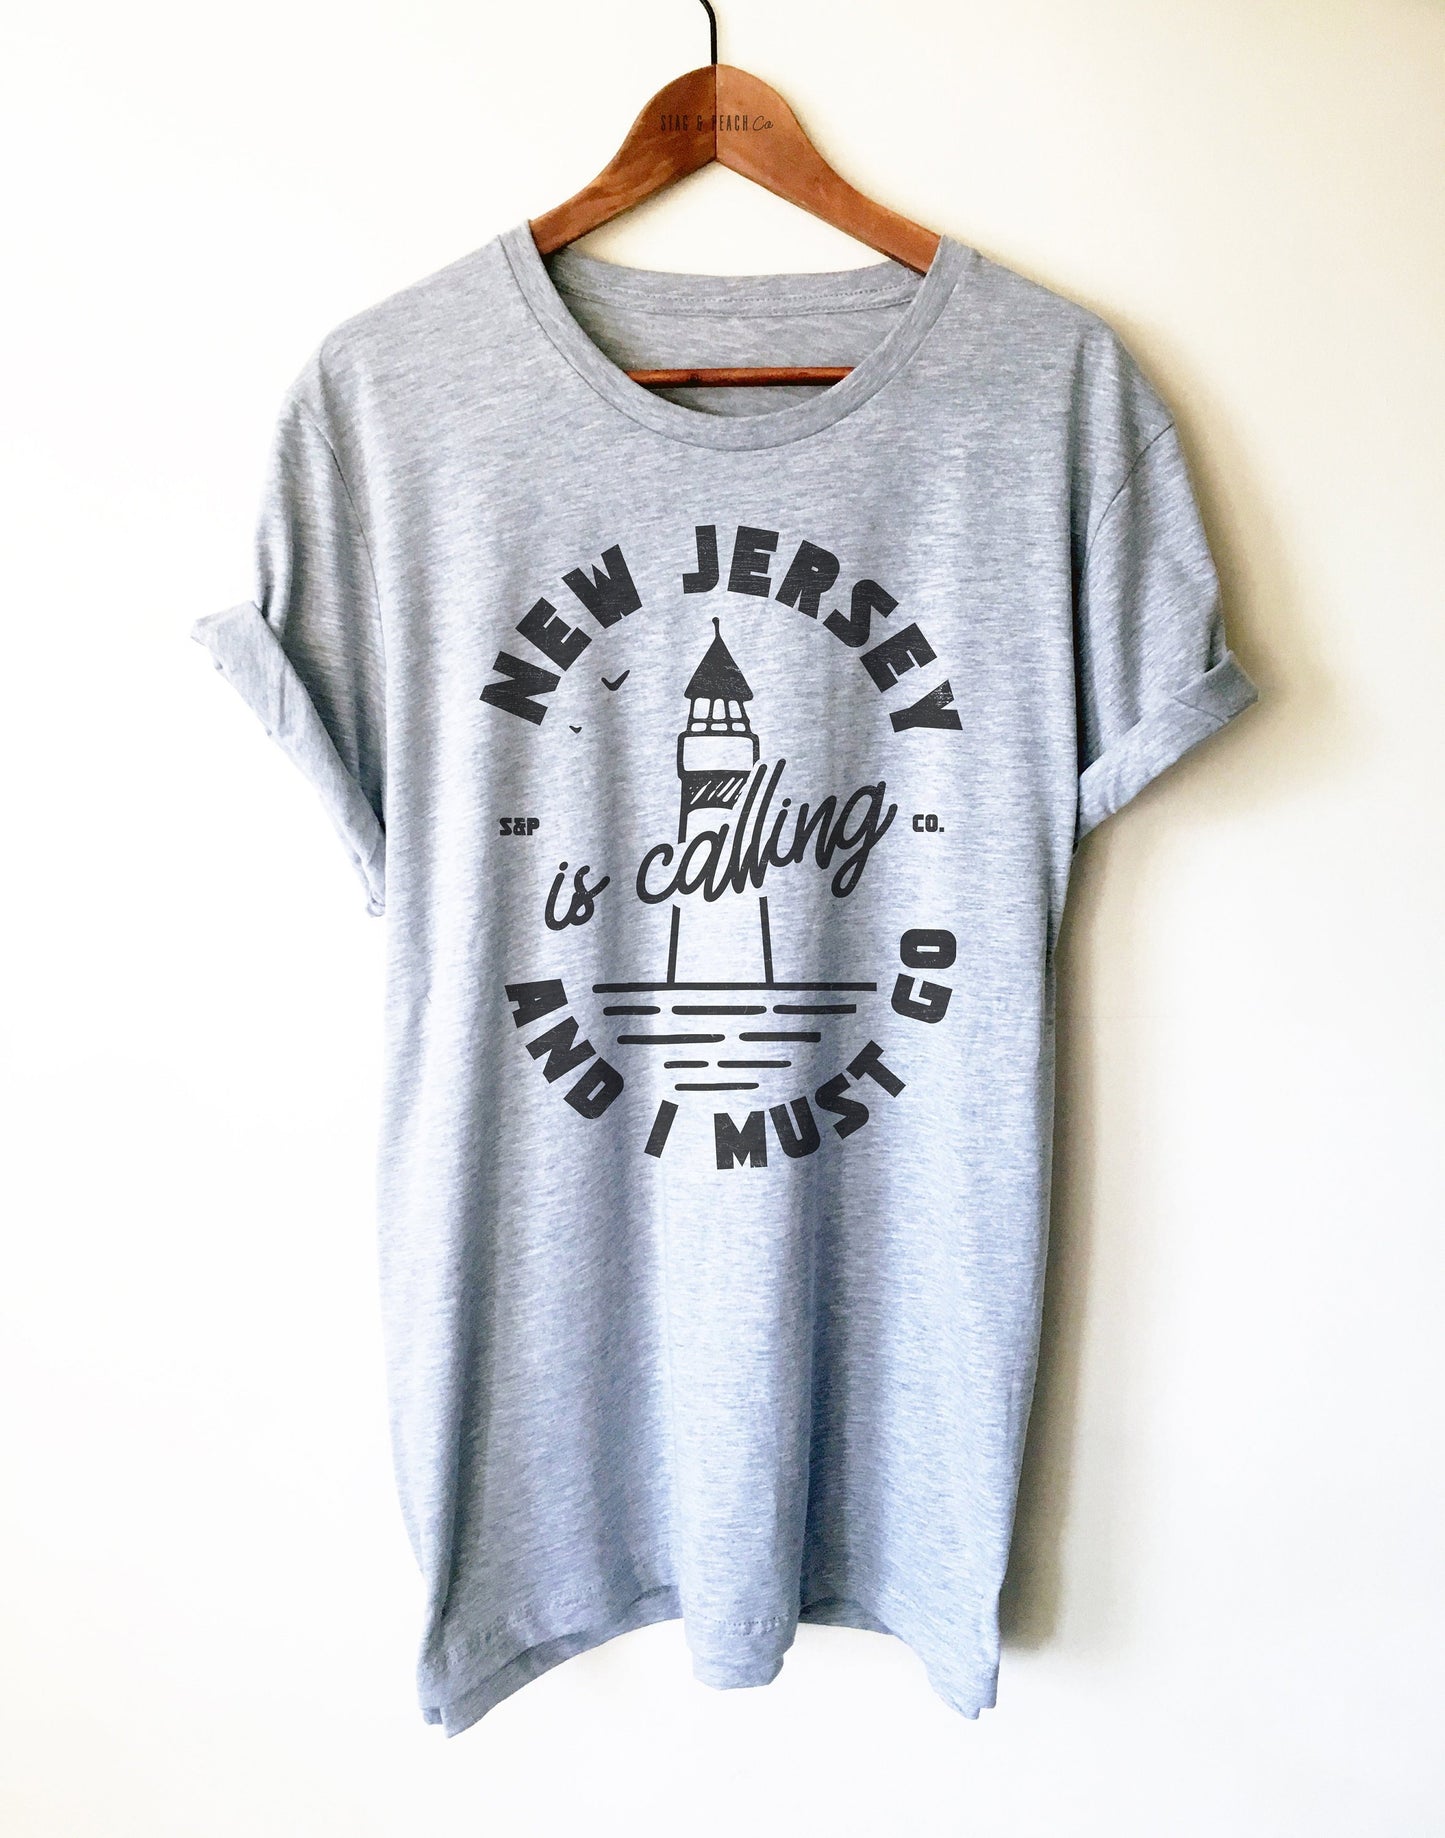 New Jersey Unisex Shirt - New